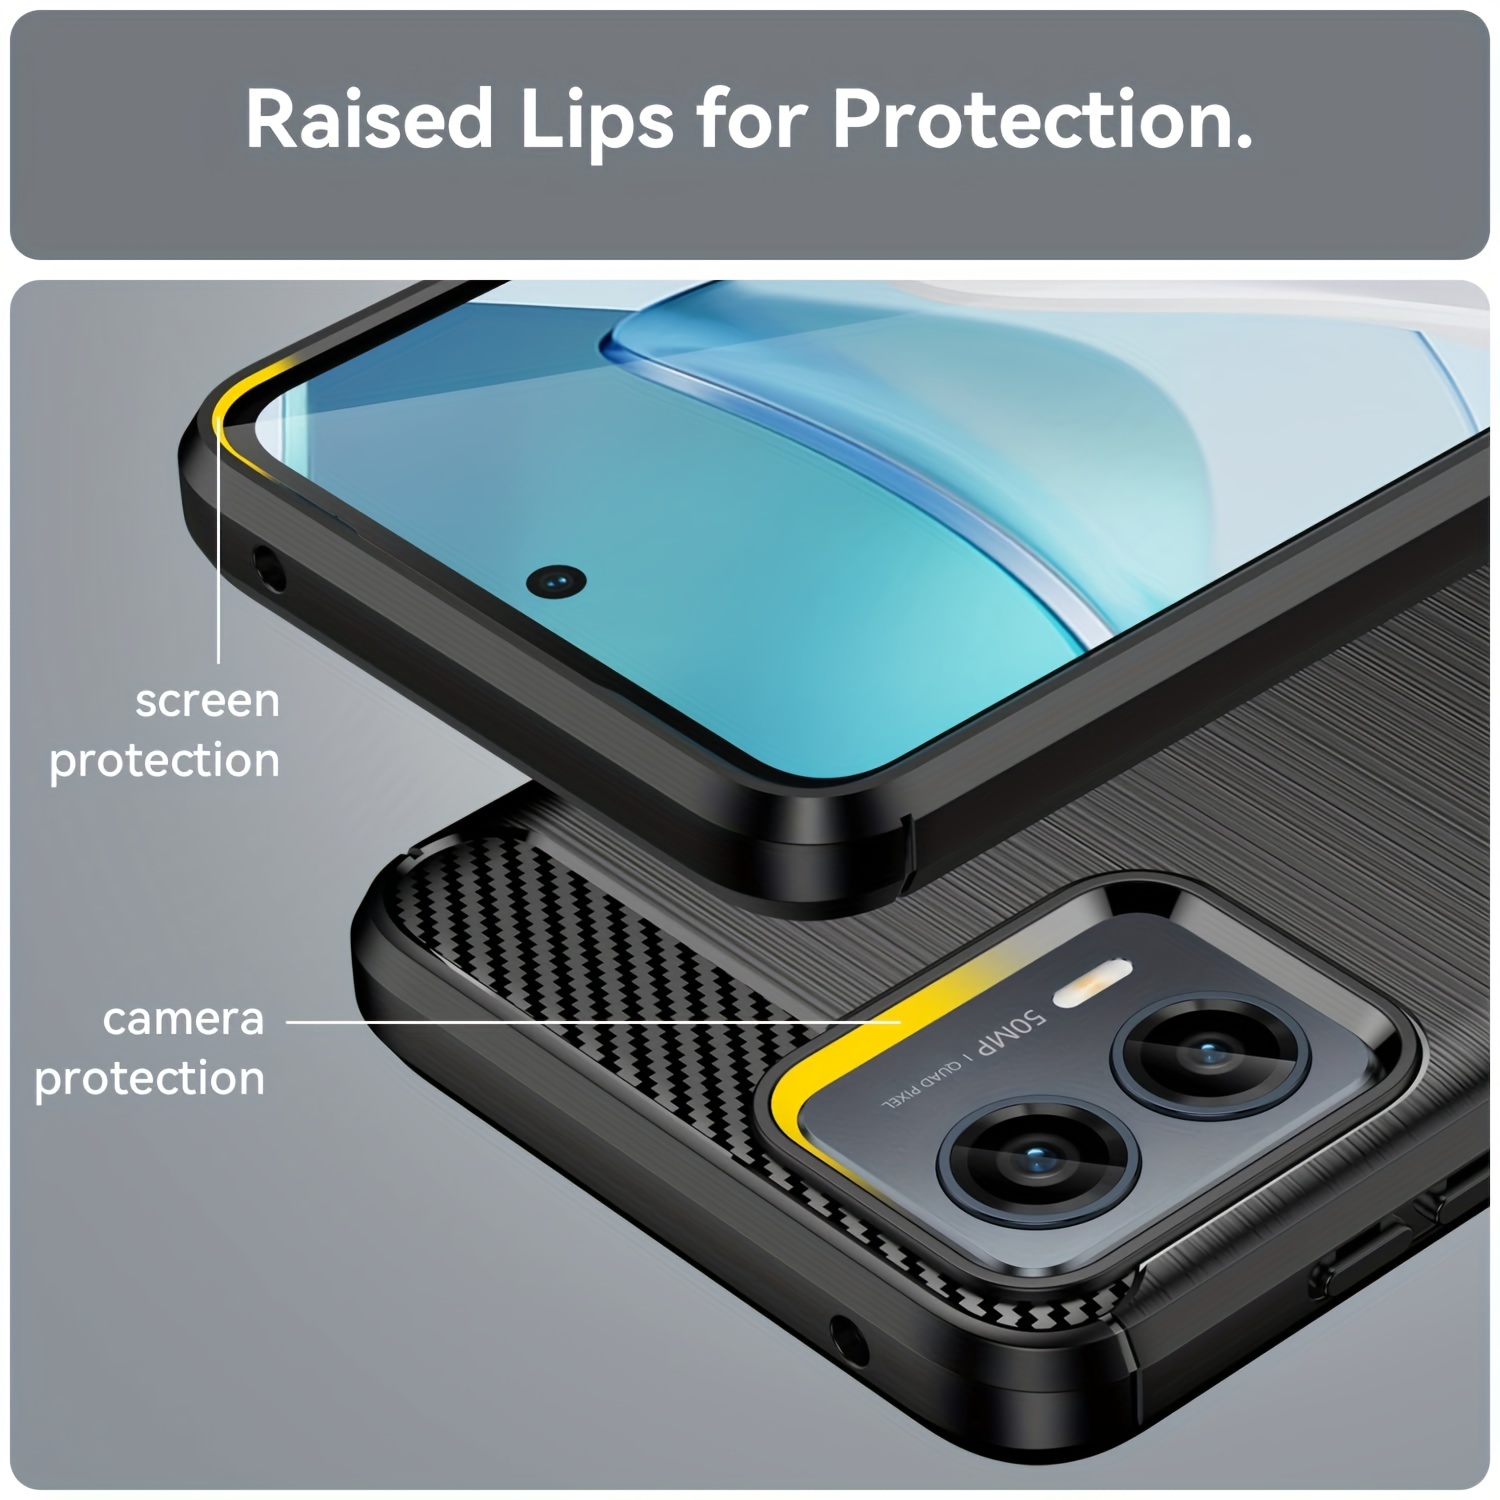 Funda para Moto G Power 5G 2023, Motorola G Power 2023 con protector de  pantalla, a prueba de golpes, transparente, delgada, suave, de silicona TPU